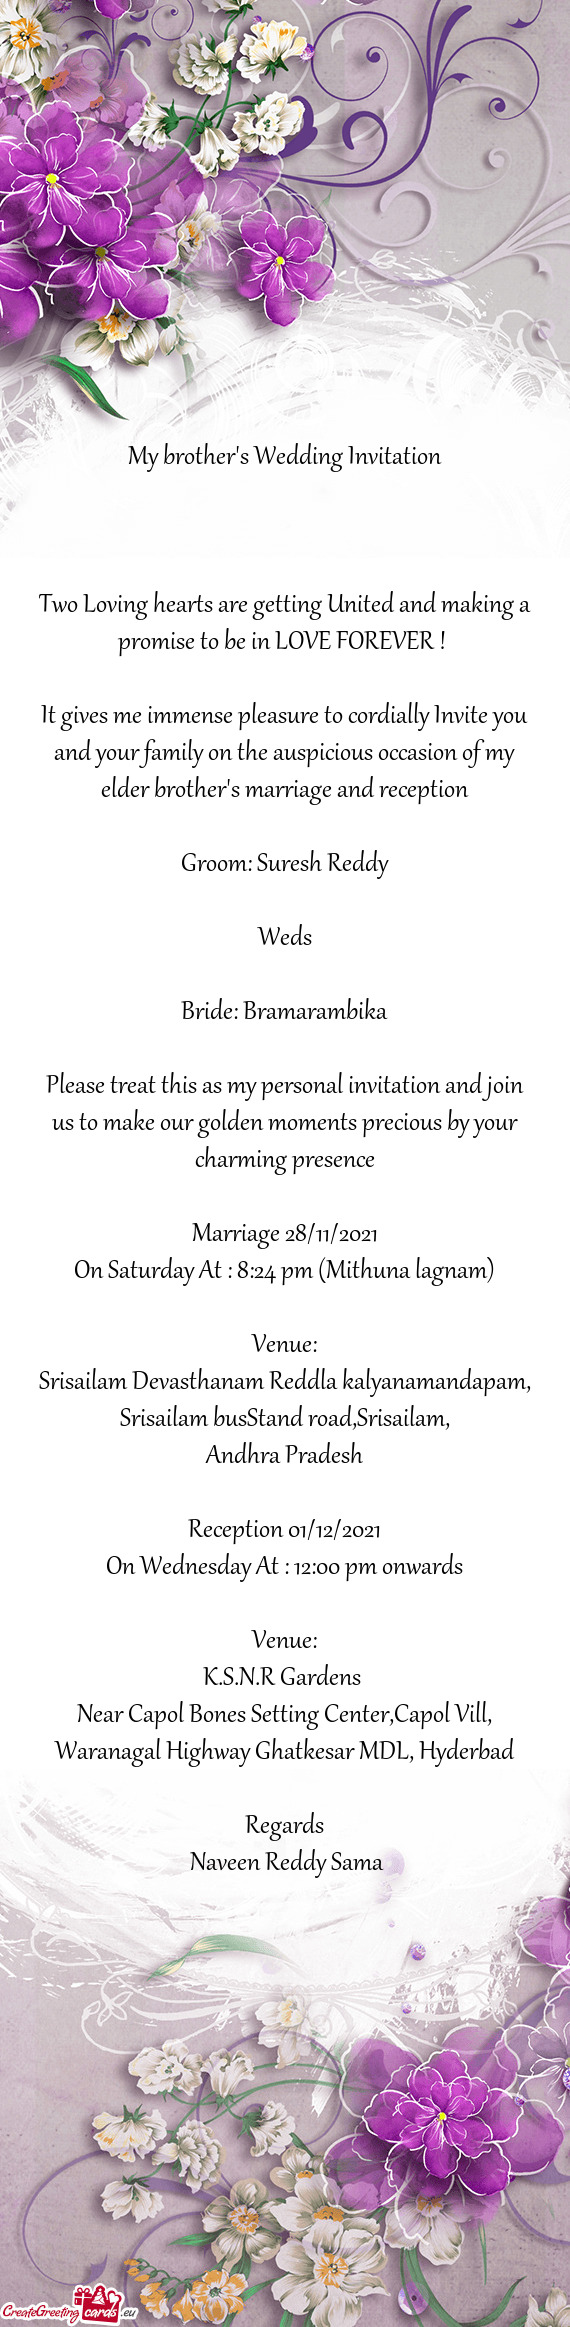 Bride: Bramarambika